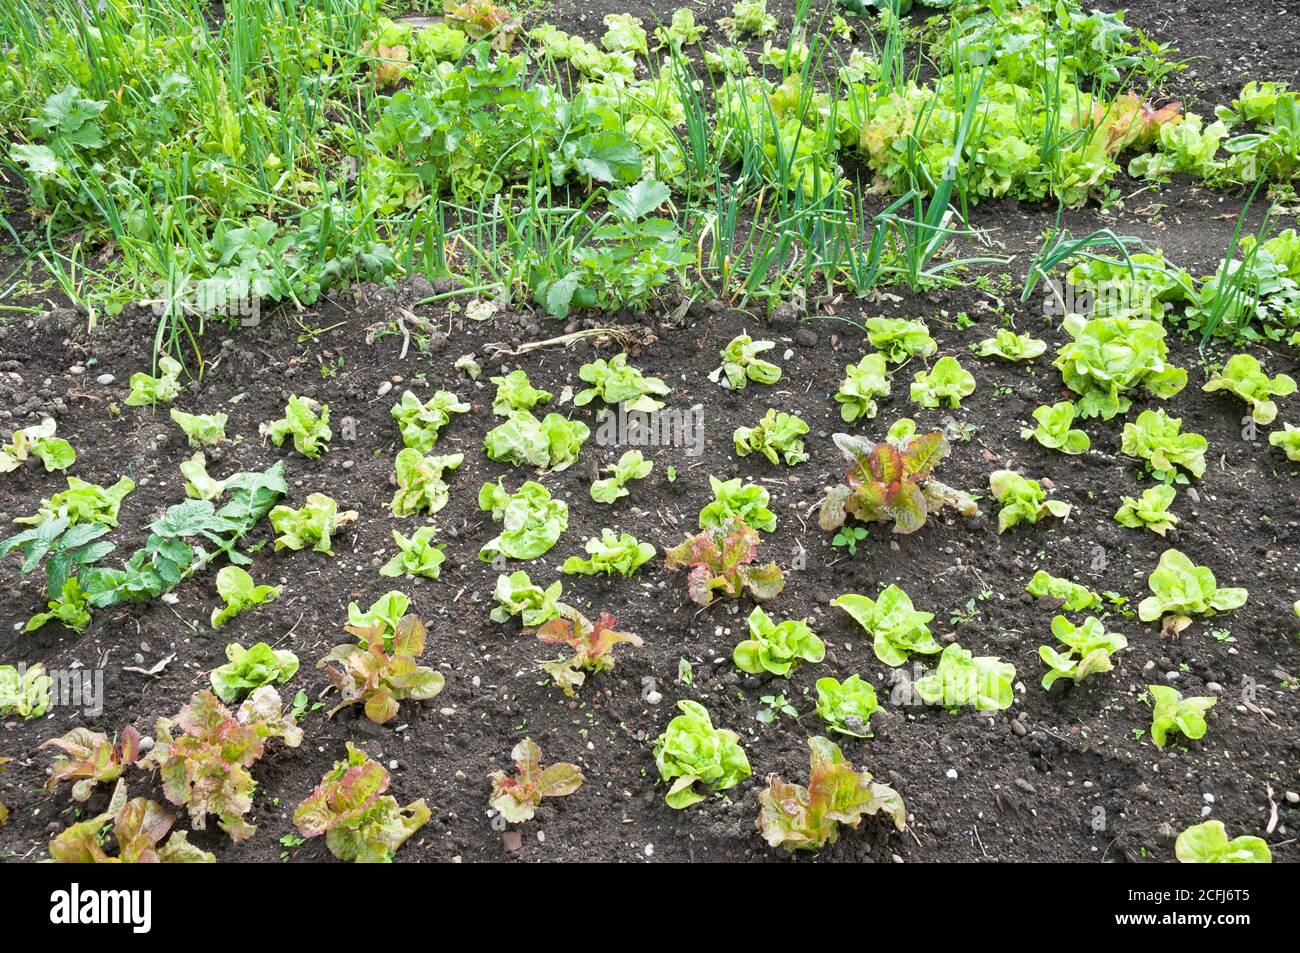 Frische junge grüne und rote Salat- und Frühlingszwiebel-Pflanzen auf einem sonnigen Gemüsegarten-Fleck. Vitamine gesunde biologische homegrown Frühling Bio - Stock Stockfoto